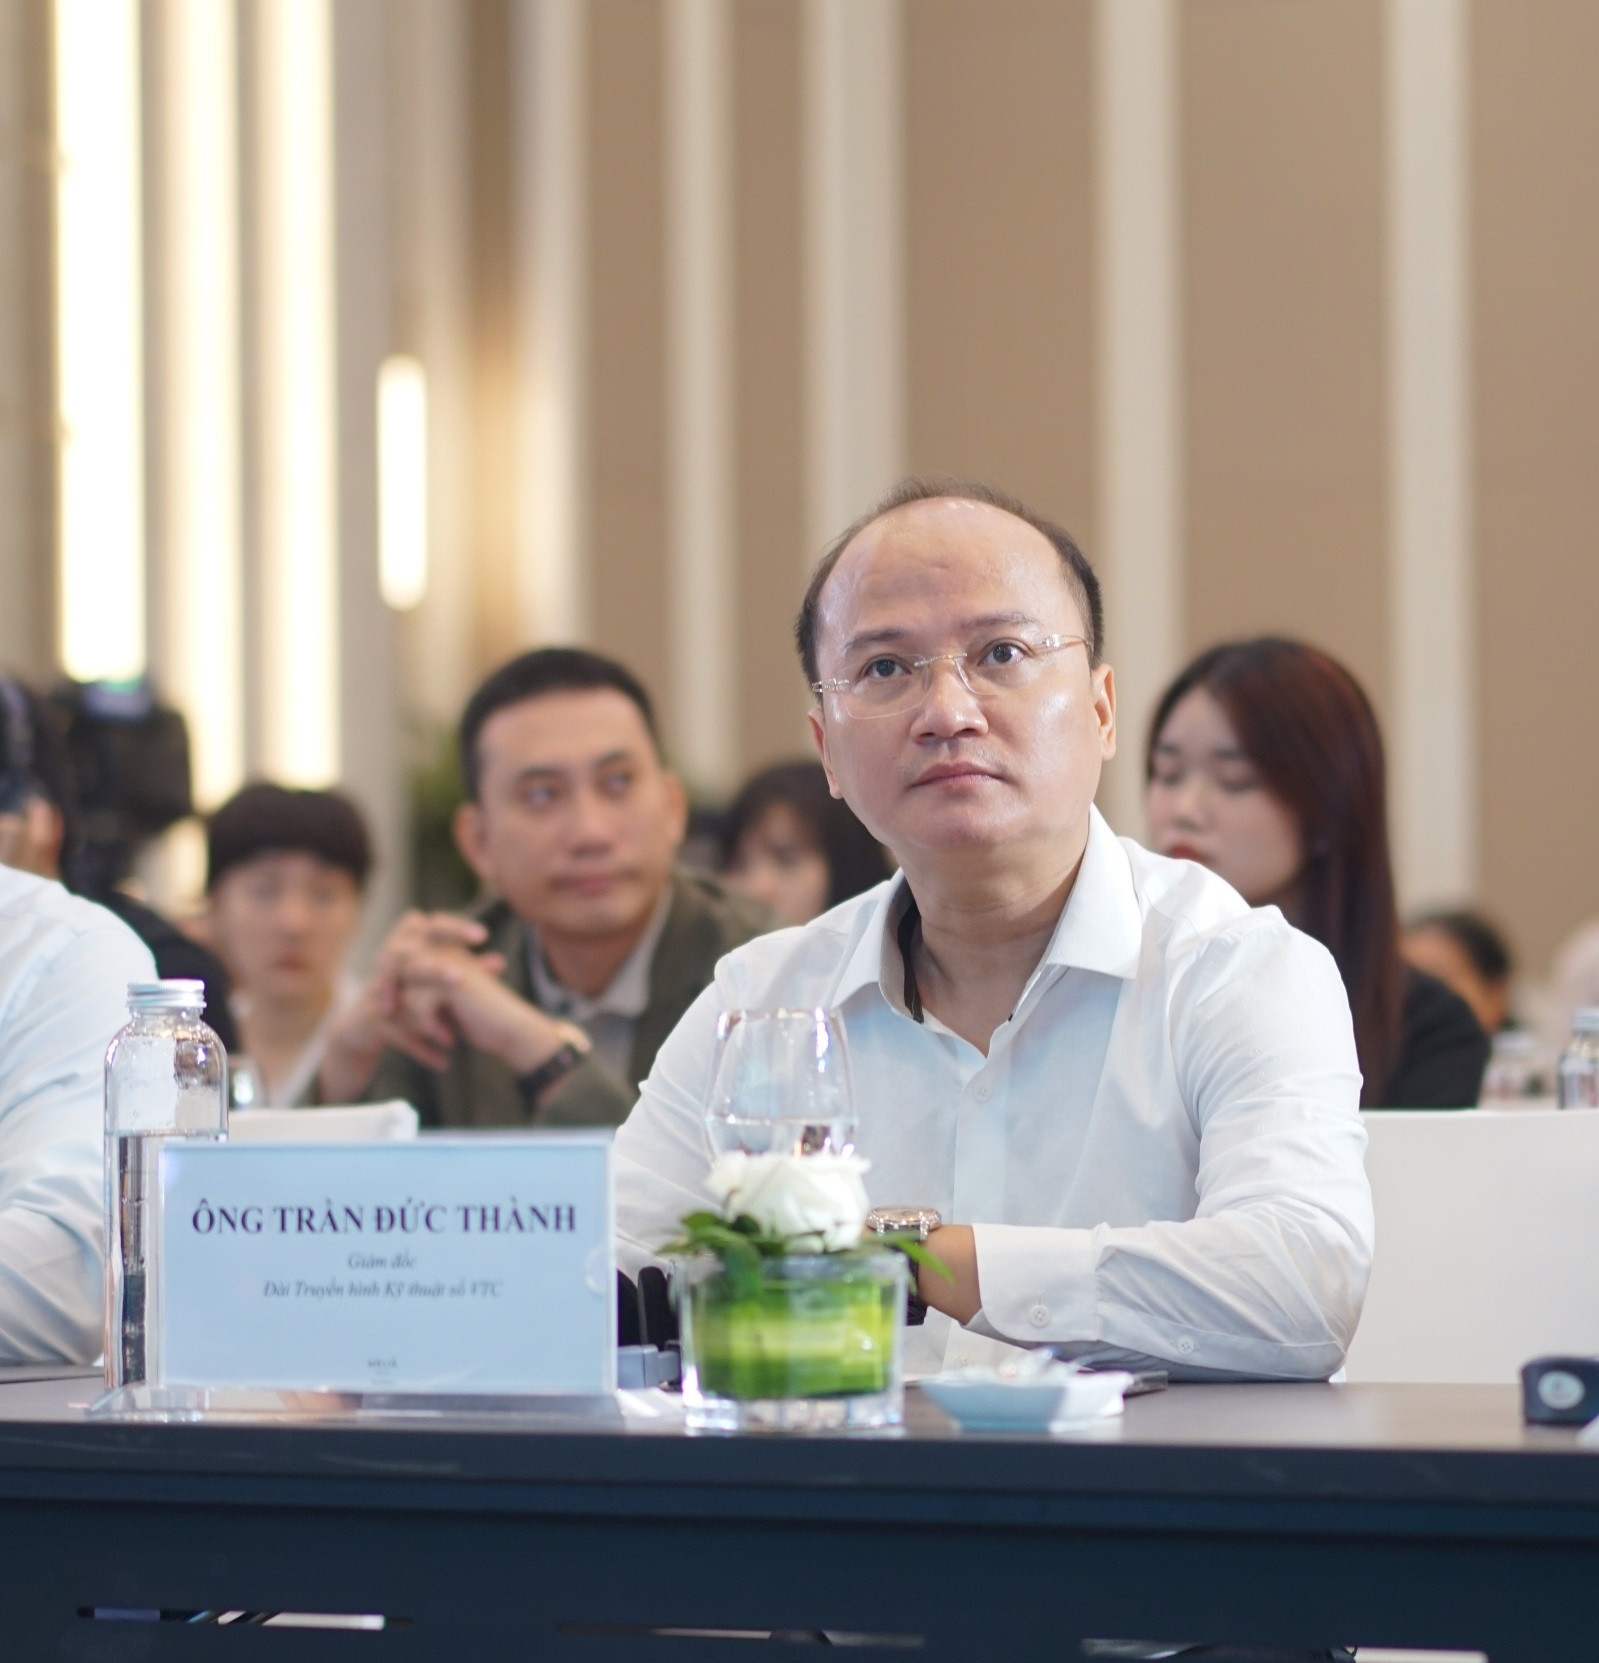 Ông Trần Đức Thành, Giám đốc Đài truyền hình Kỹ thuật số VTC, đơn vị phối hợp tổ chức diễn đàn.